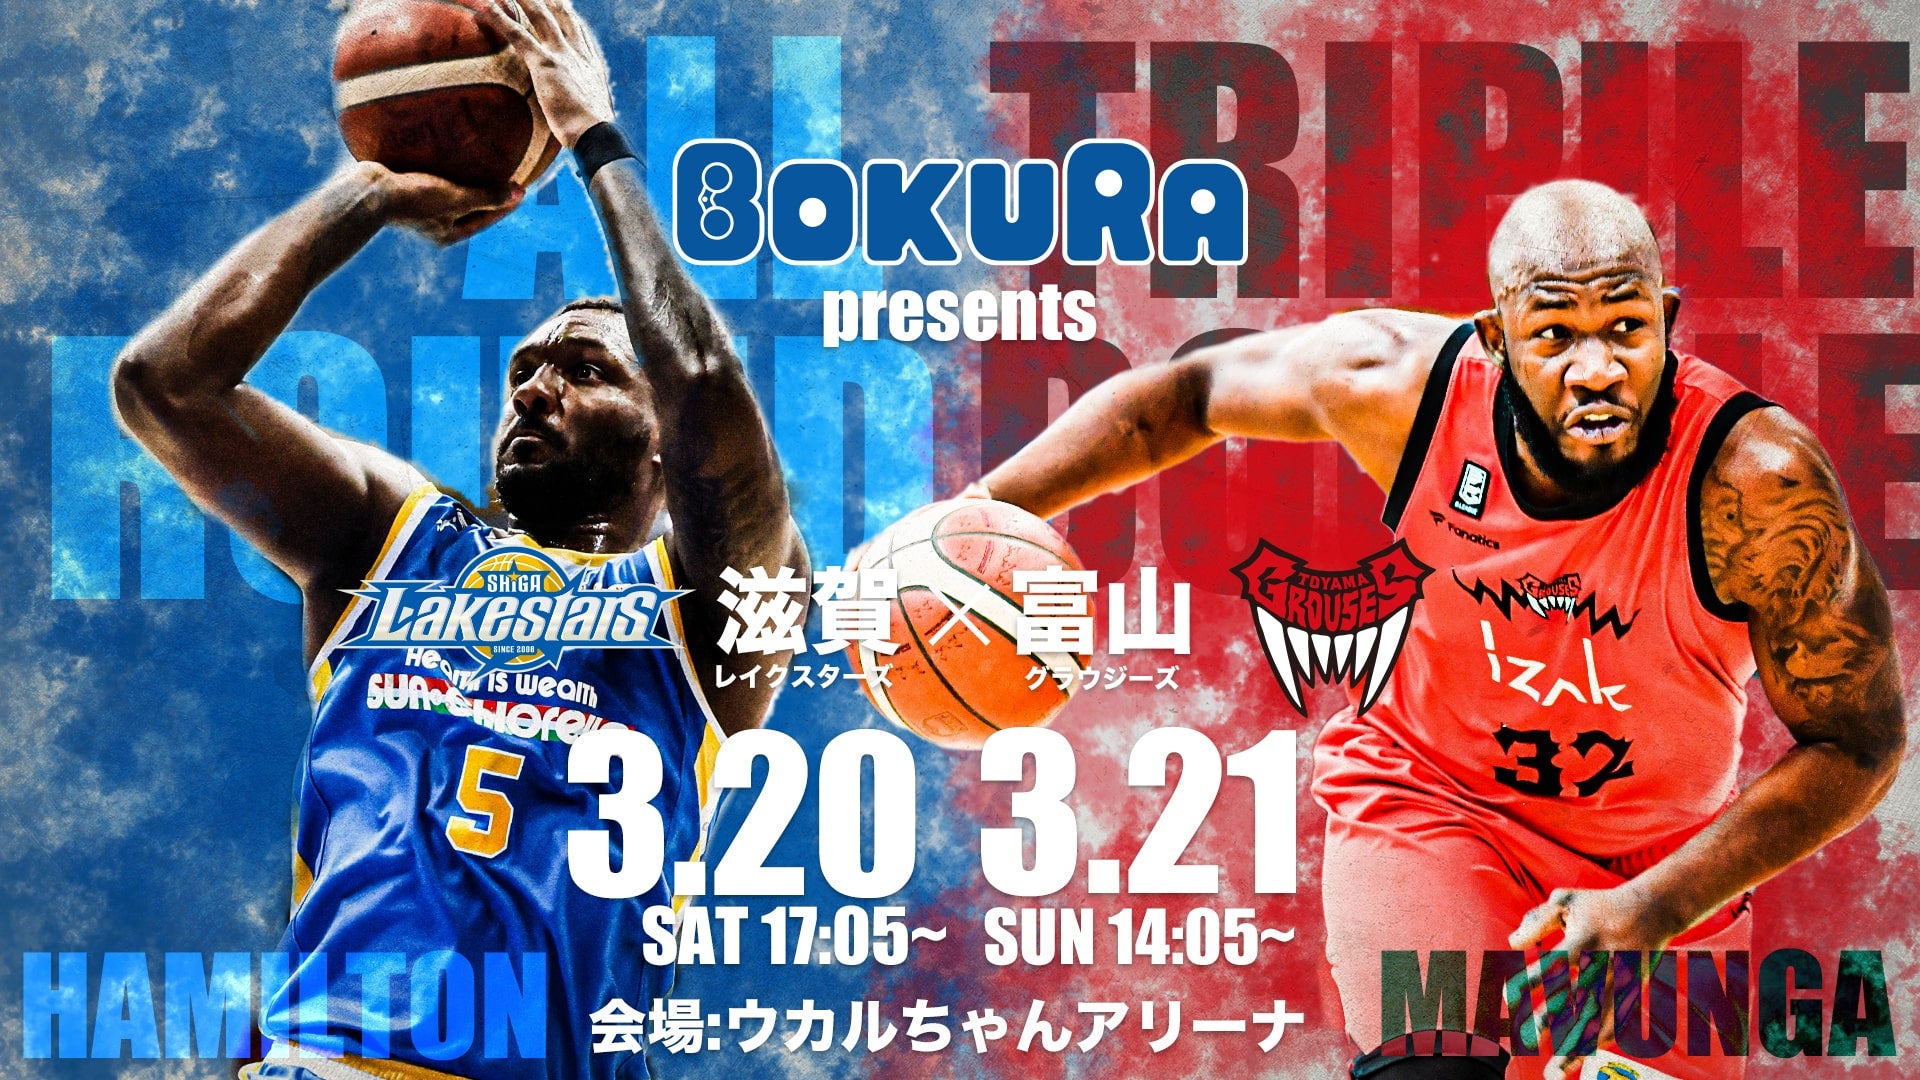 ホームゲーム 3/20㊏ 21㊐】BOKURA presents vs 富山グラウジーズ | 滋賀レイクス